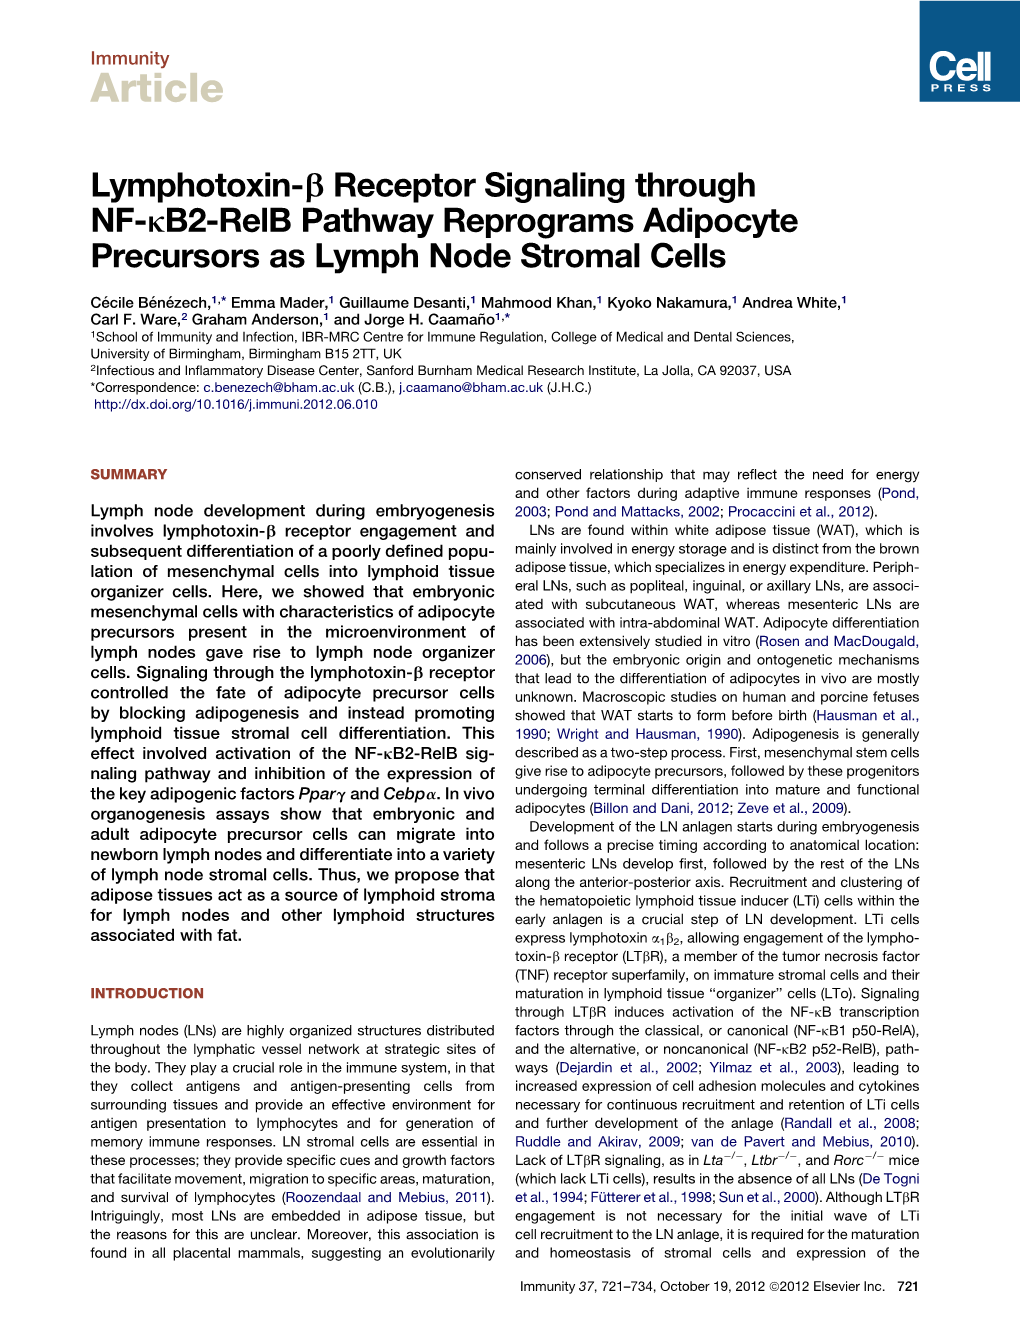 Lymphotoxin-&Beta; Receptor Signaling Through NF